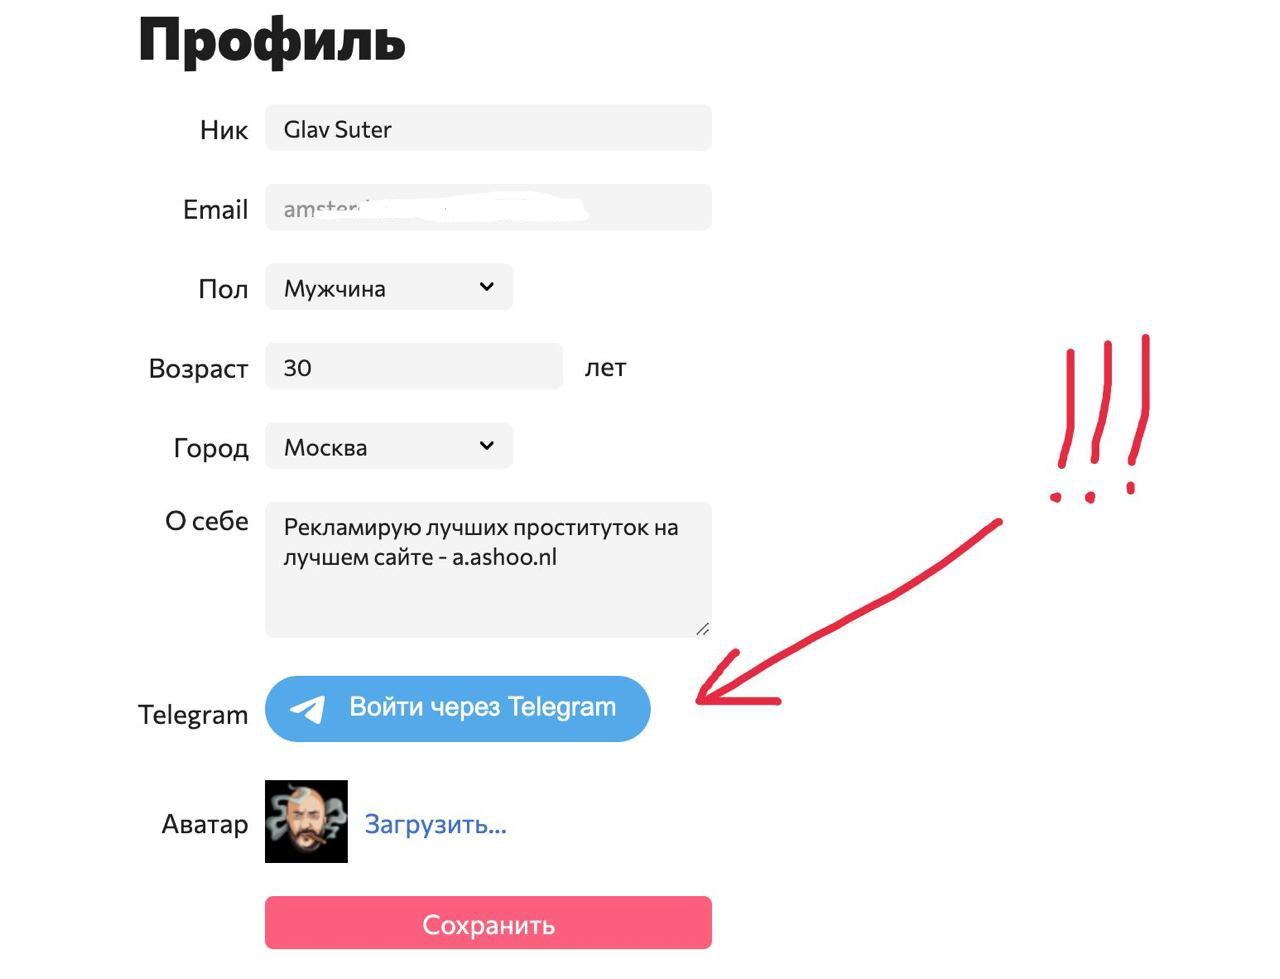 Скачать новый тик ток на андроид бесплатно через телеграмм последнюю версию русском языке фото 105